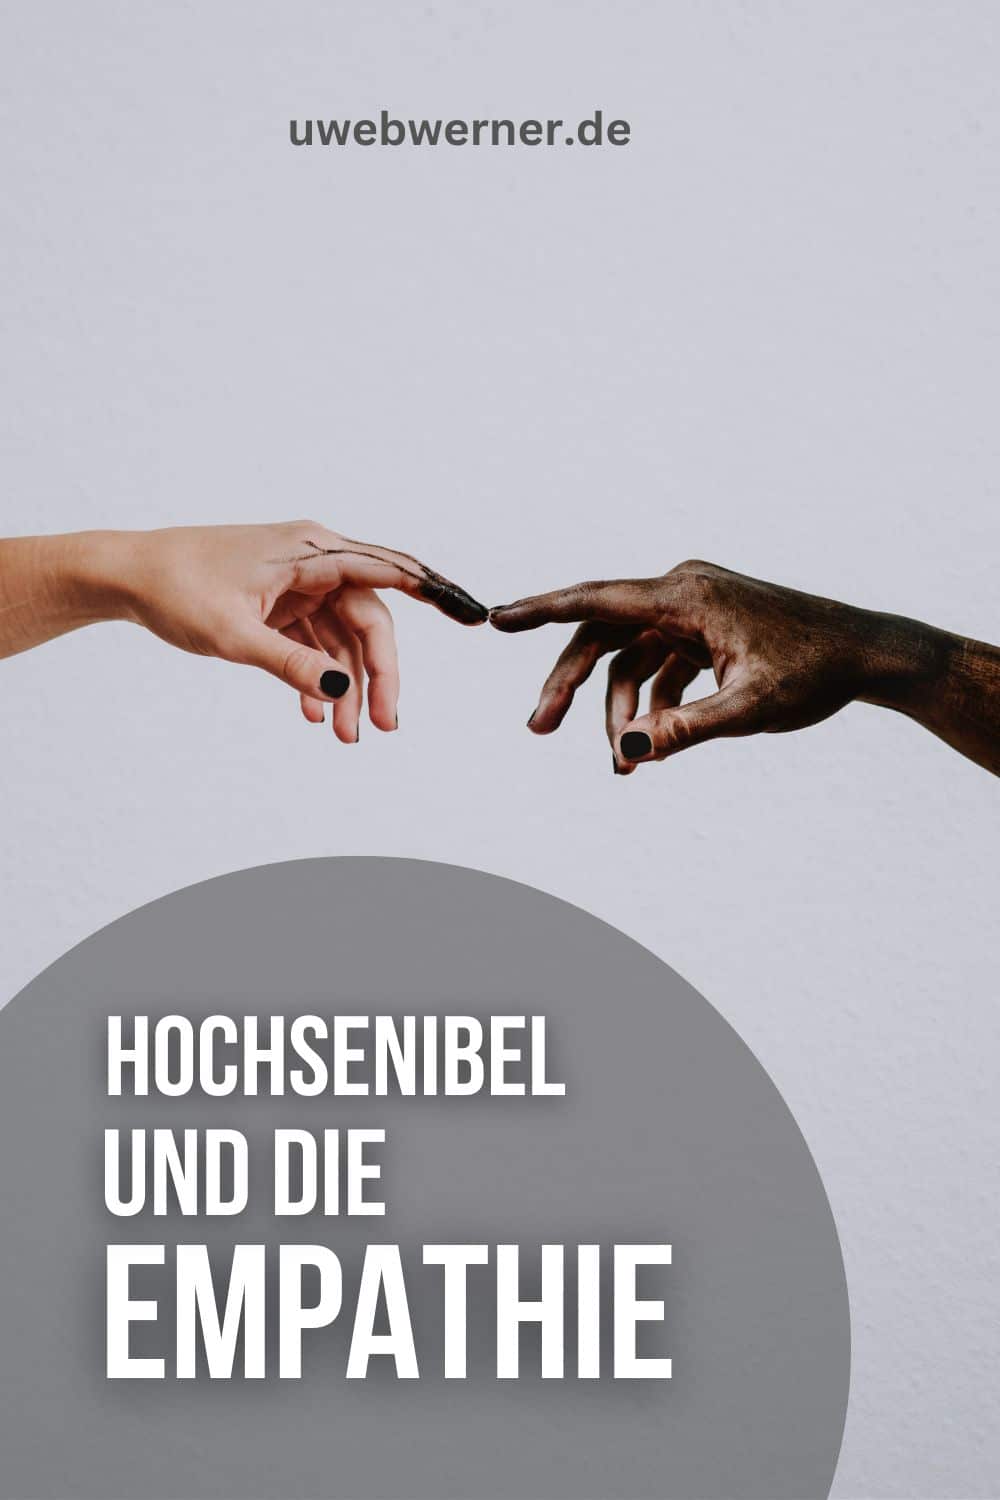 EMpathie Hochsenibel und die uwebwerner.de